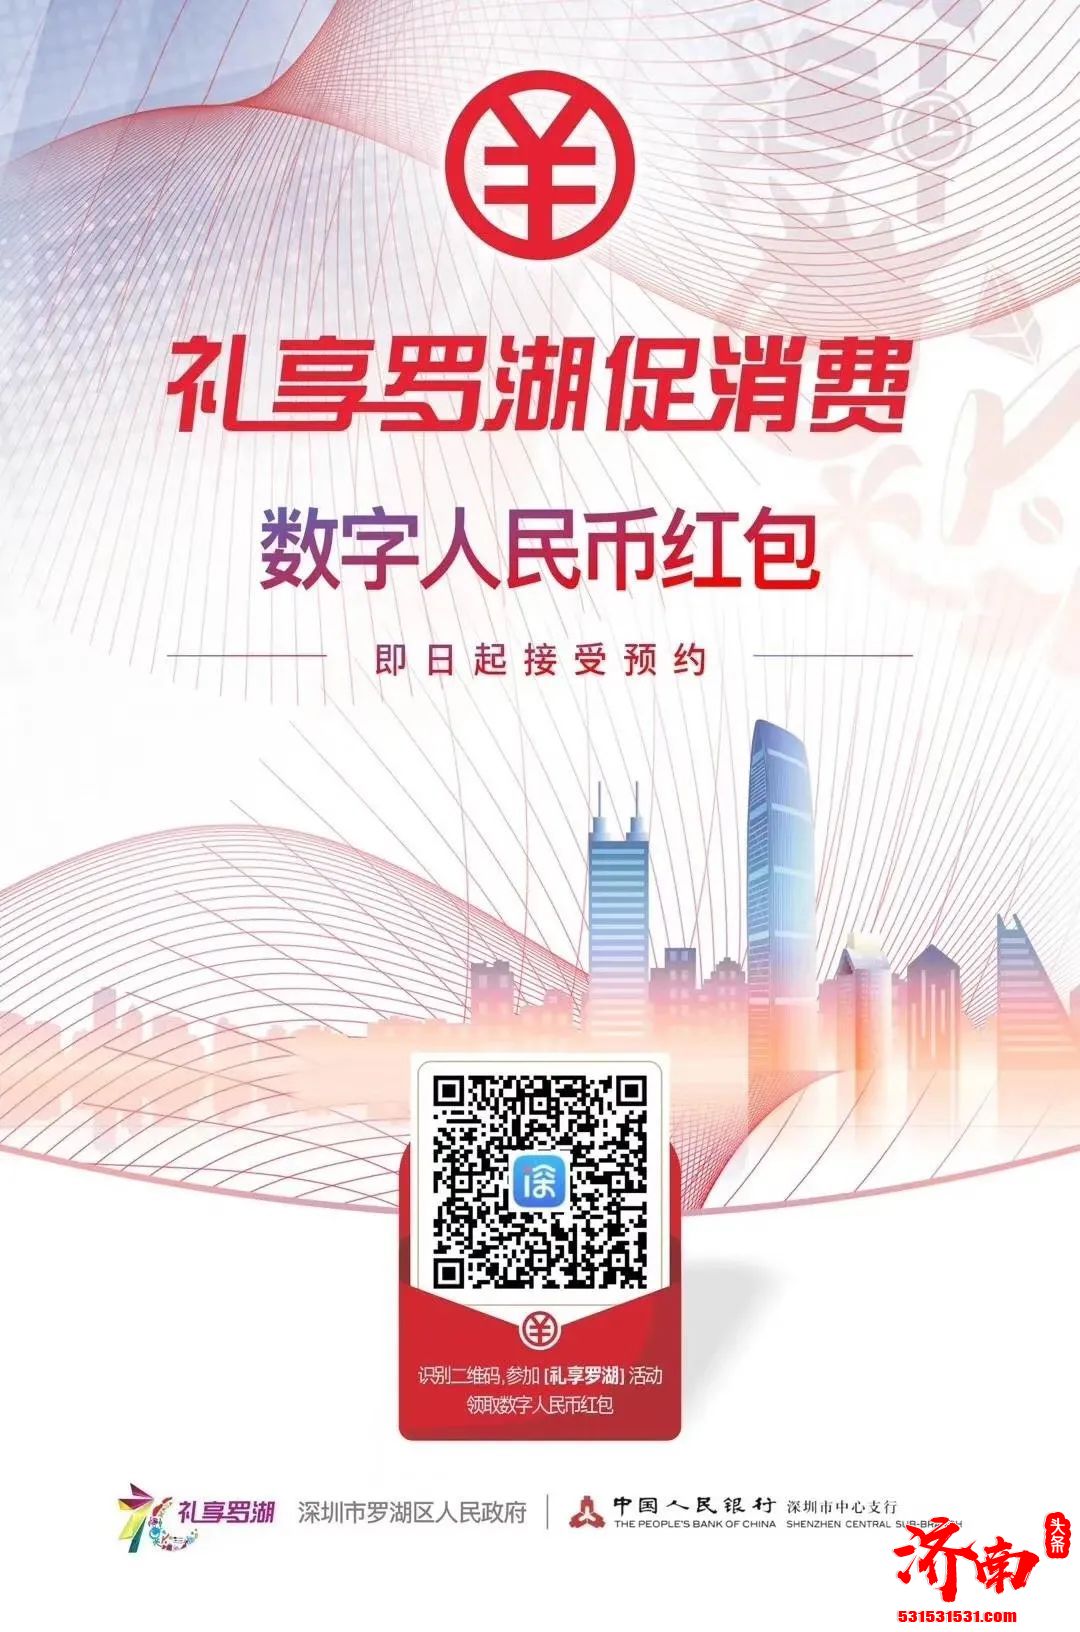 深圳市开展了数字人民币红包试点 A股有如下概念股值得关注